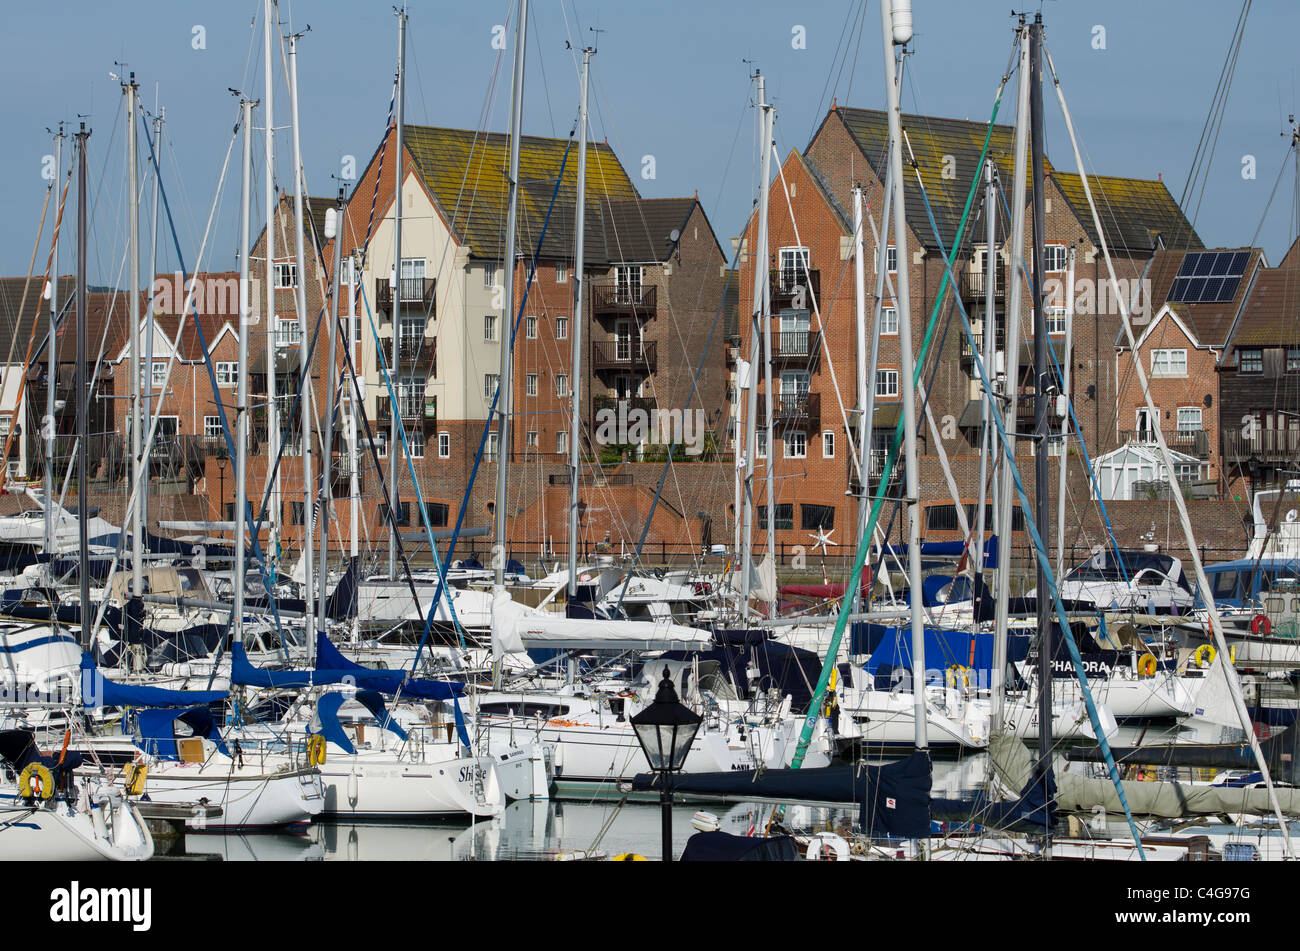 Marina animée pleine de bateaux et yachts au port souverain, Eastbourne, le développement de l'East Sussex, Angleterre Banque D'Images